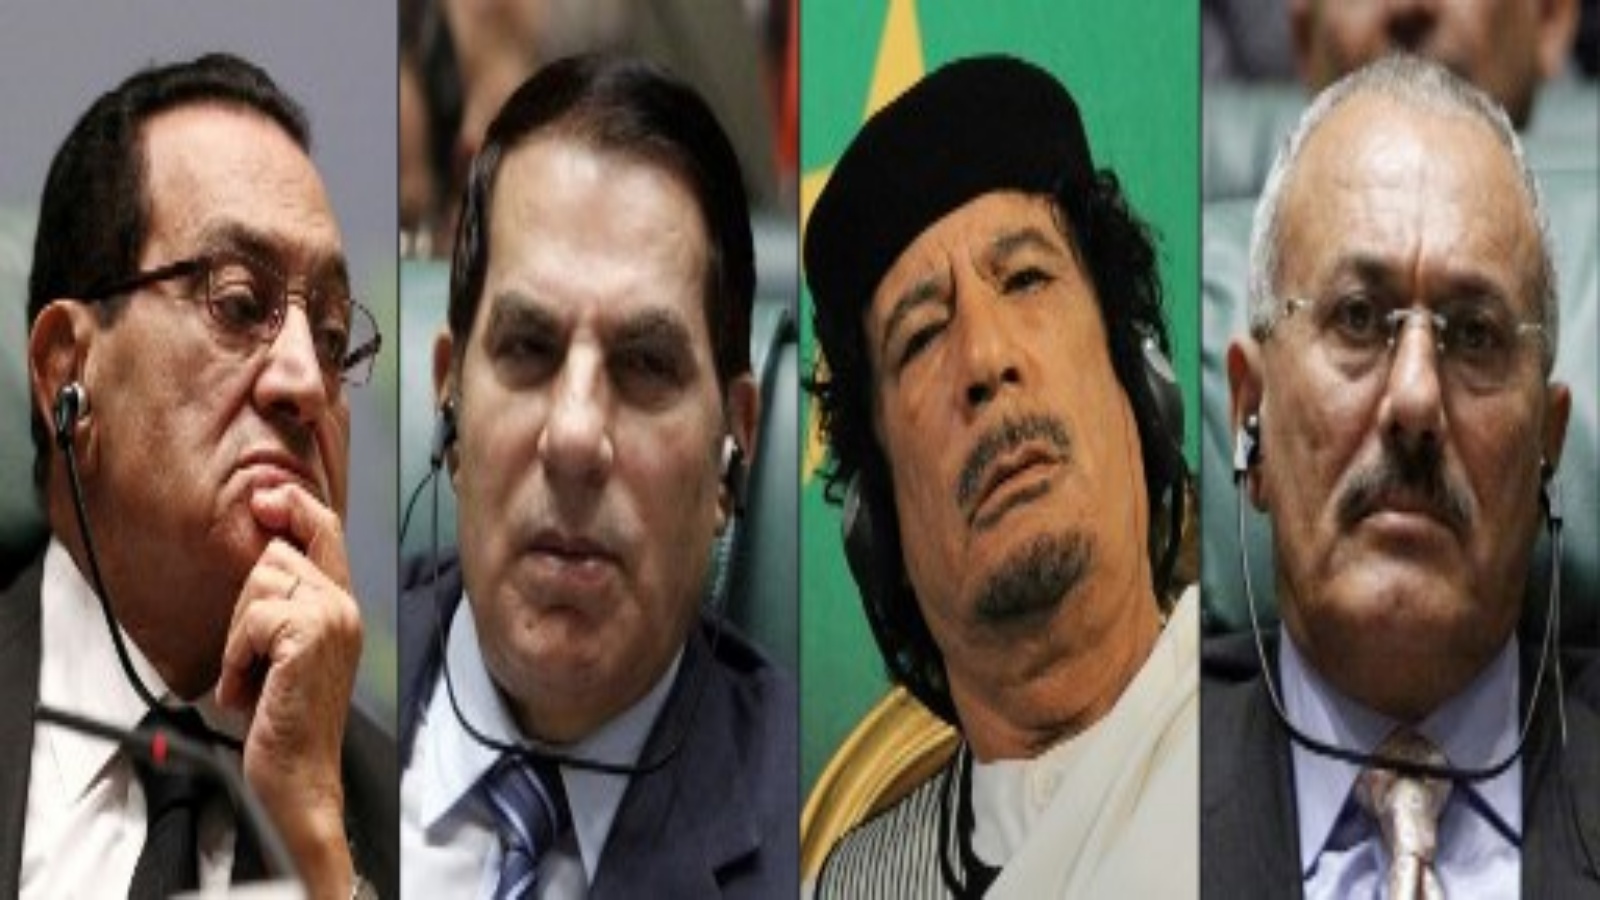 صور تظهر الرئيس المصري حسني مبارك (إلى اليسار) والرئيس التونسي زين العابدين بن علي (الثاني إلى اليسار) والرئيس اليمني علي عبد الله صالح (إلى اليمين) خلال المؤتمر العربي الأفريقي المشترك. قمة في سرت الليبية في 10 أكتوبر 2010 ؛ والزعيم الليبي معمر القذافي (الثاني إلى اليمين) خلال عرض الفروسية في مدرسة تور دي كوينتو للفرسان شمال روما في 30 أغسطس 2010